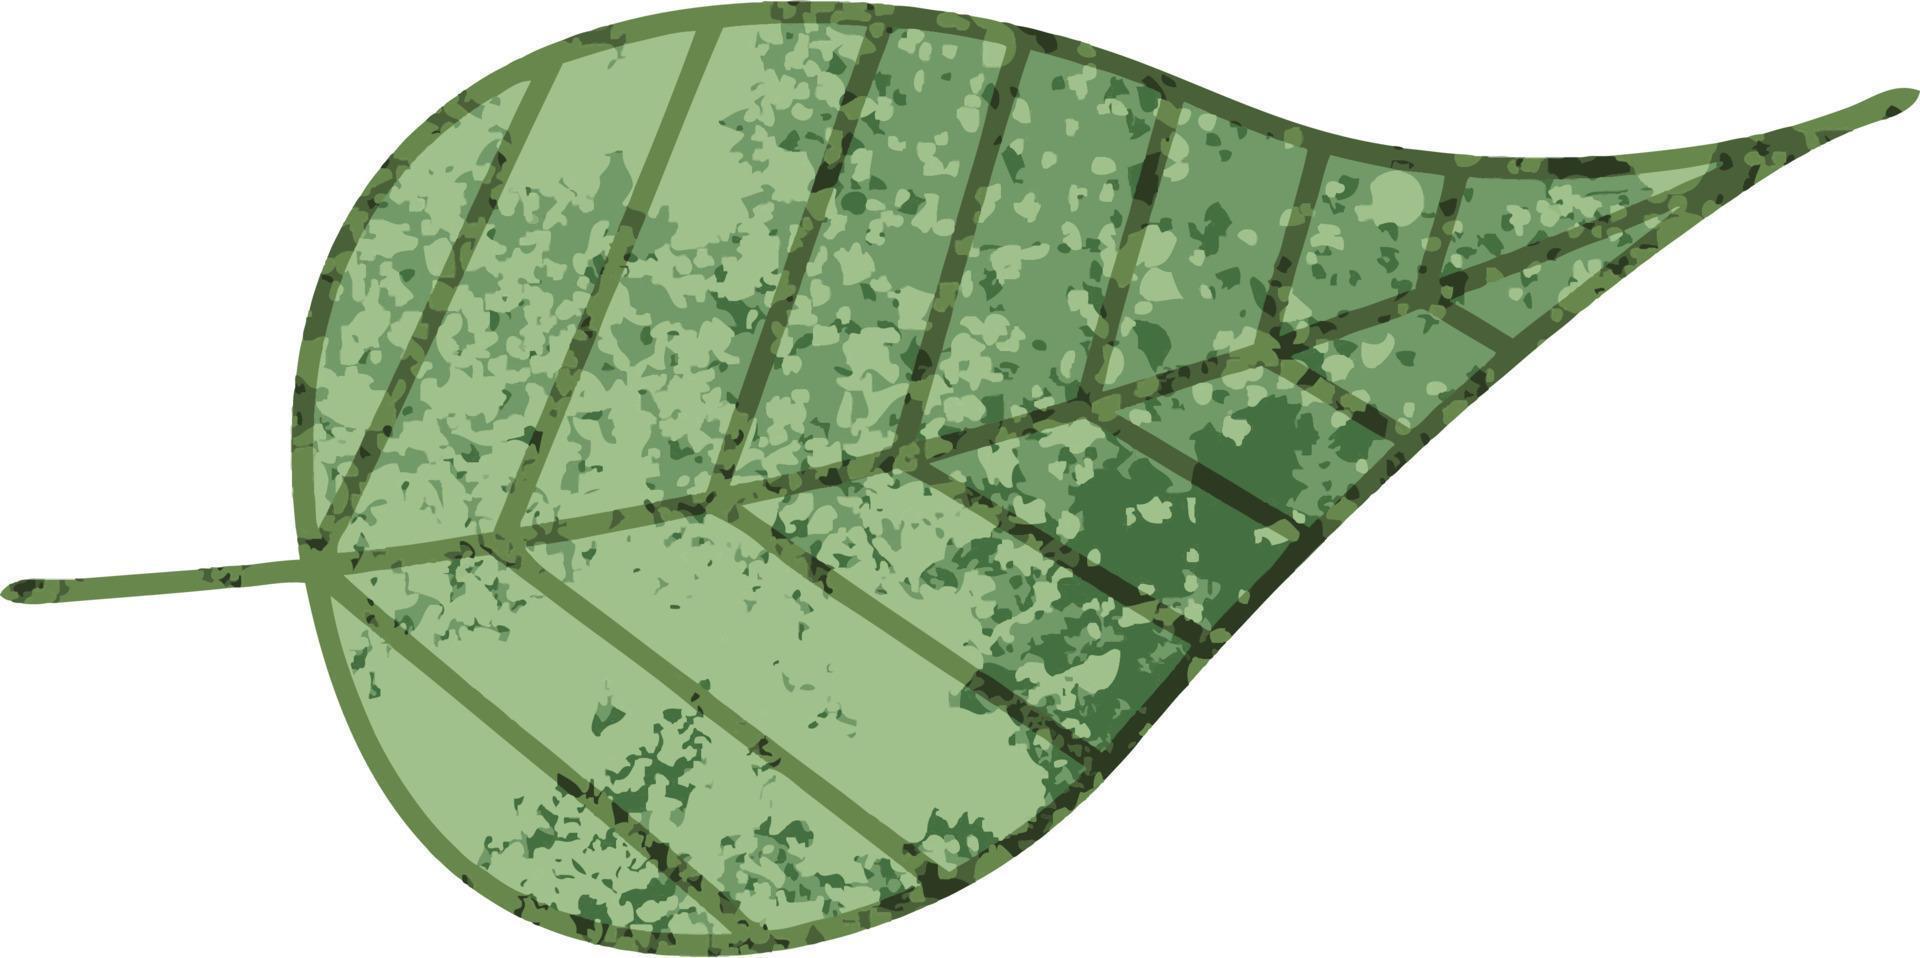 grünes Blatt der Retro- Illustrationsartkarikatur vektor